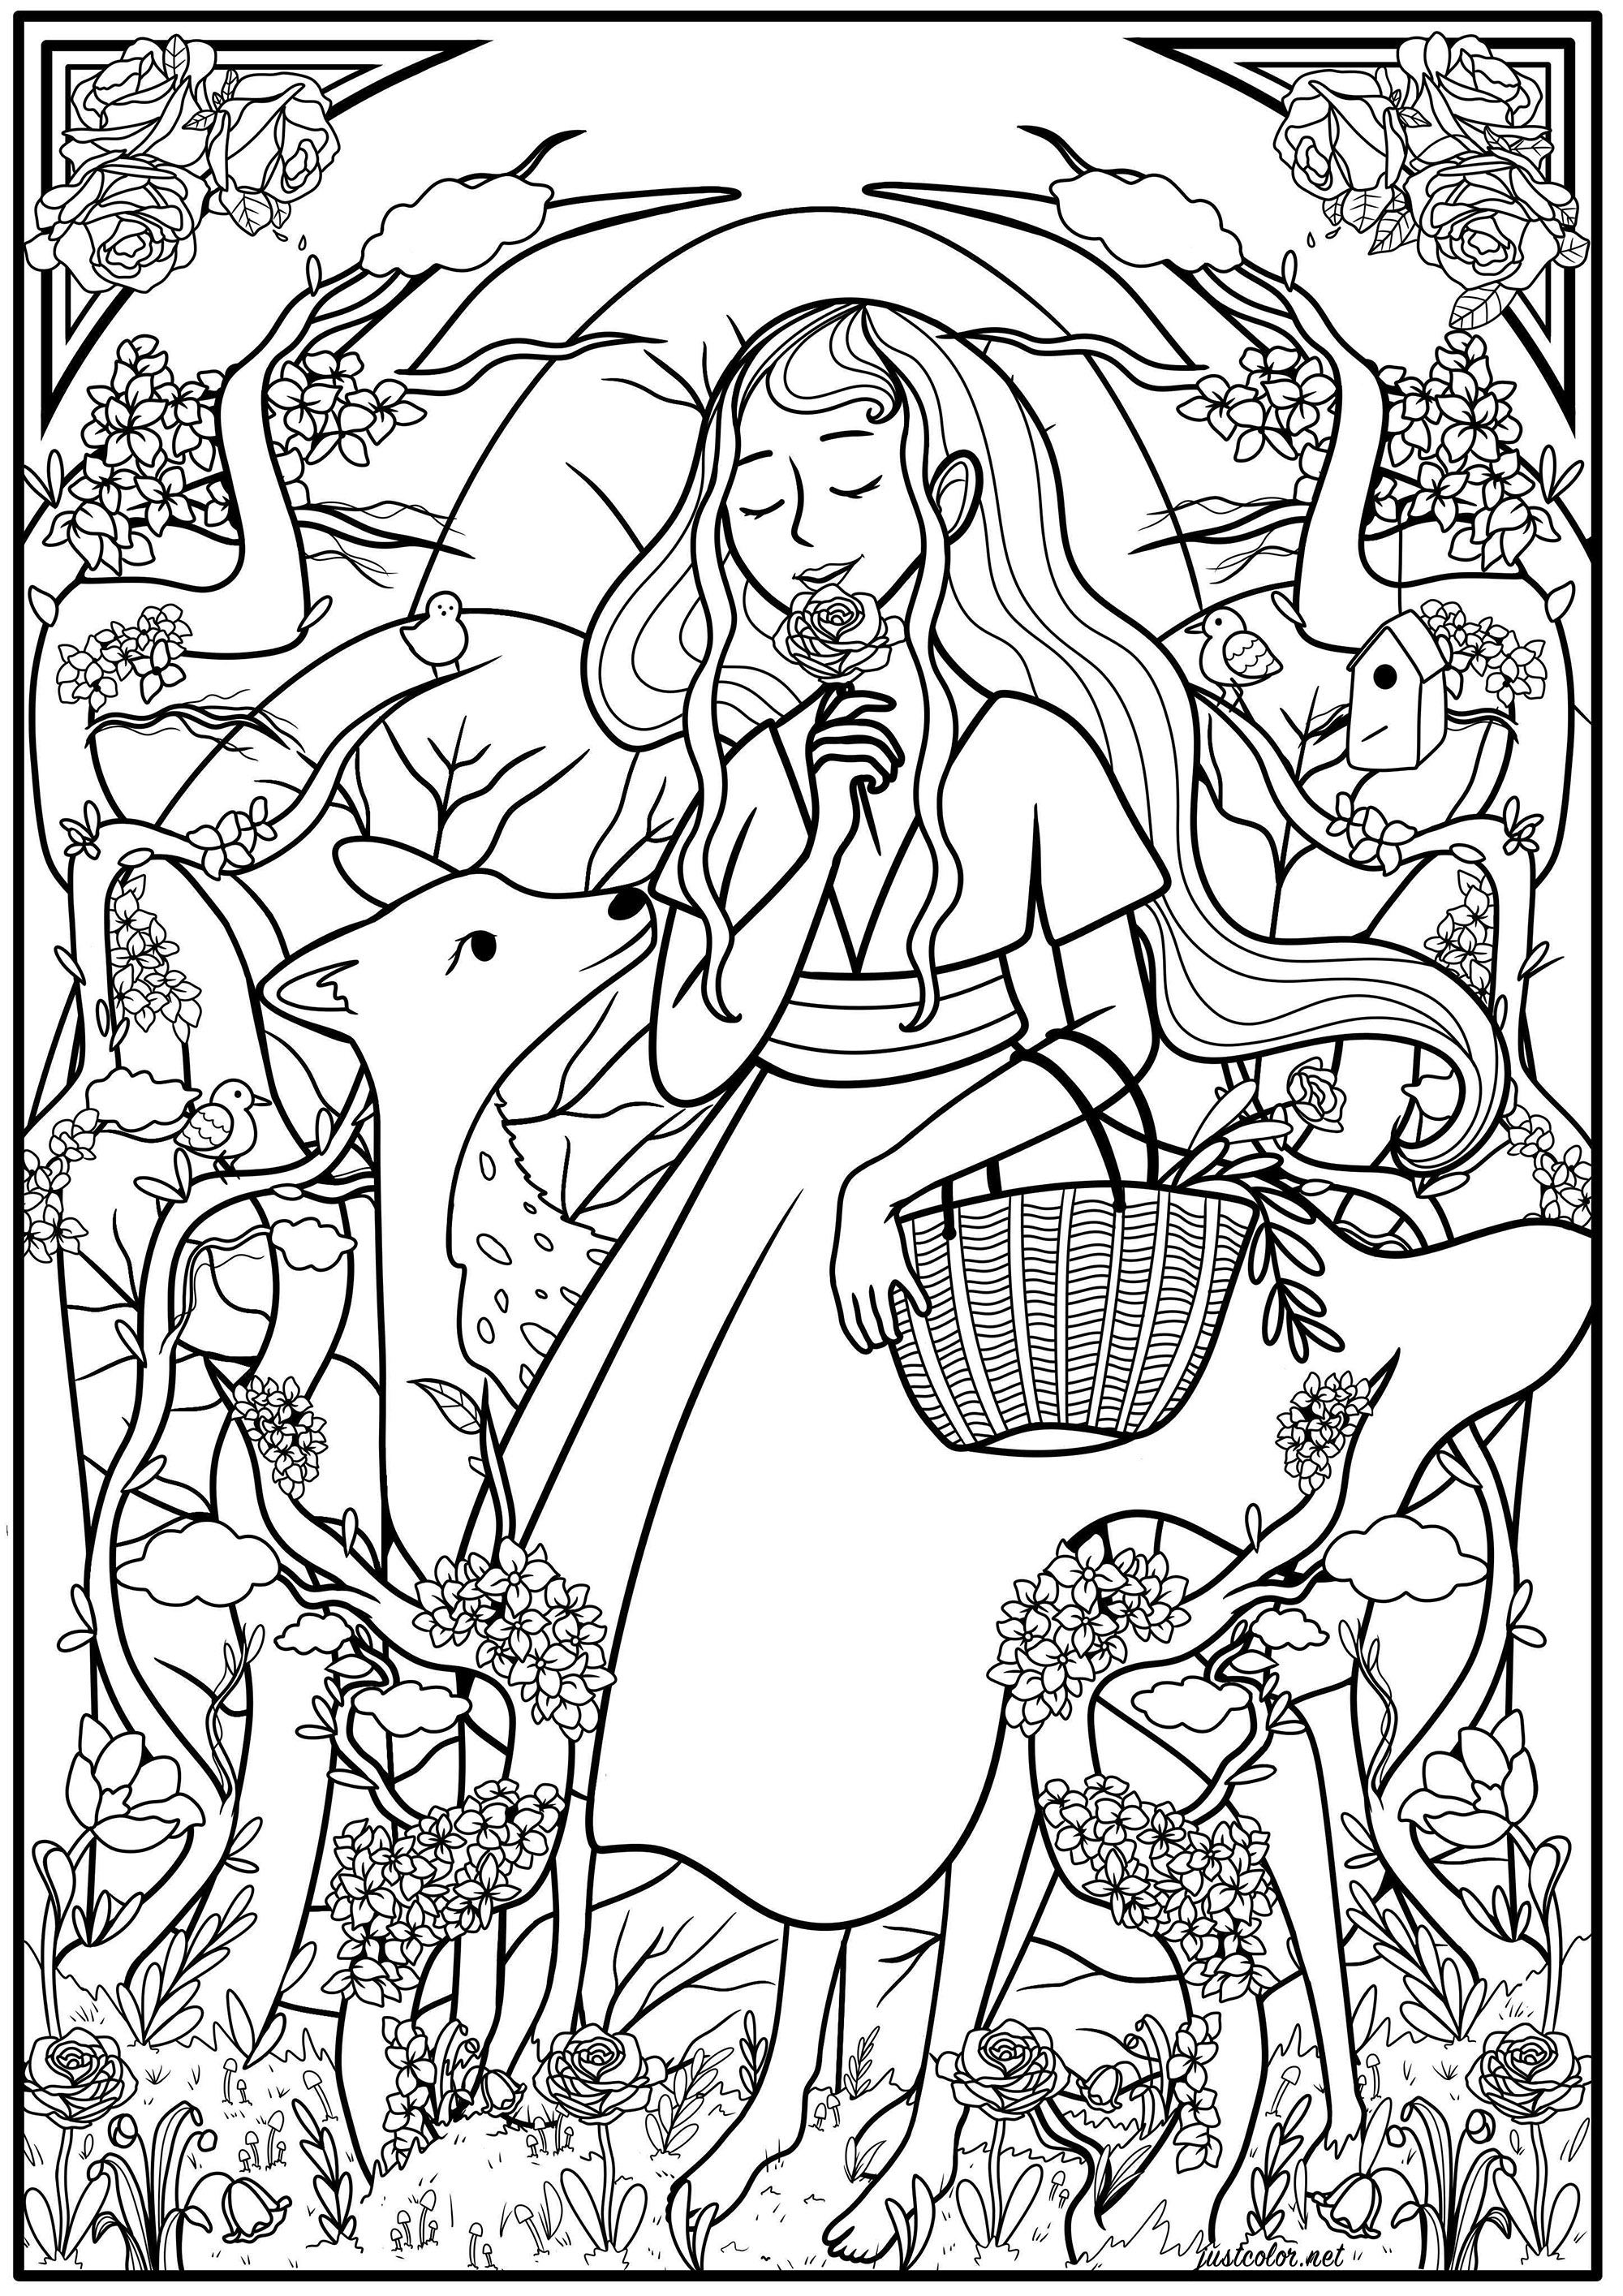 Mulher jovem a apanhar flores na floresta, rodeada de muita vegetação e com um cervo a acompanhá-la. Esta página para colorir é inspirada no estilo Art Nouveau, Artista : Océane